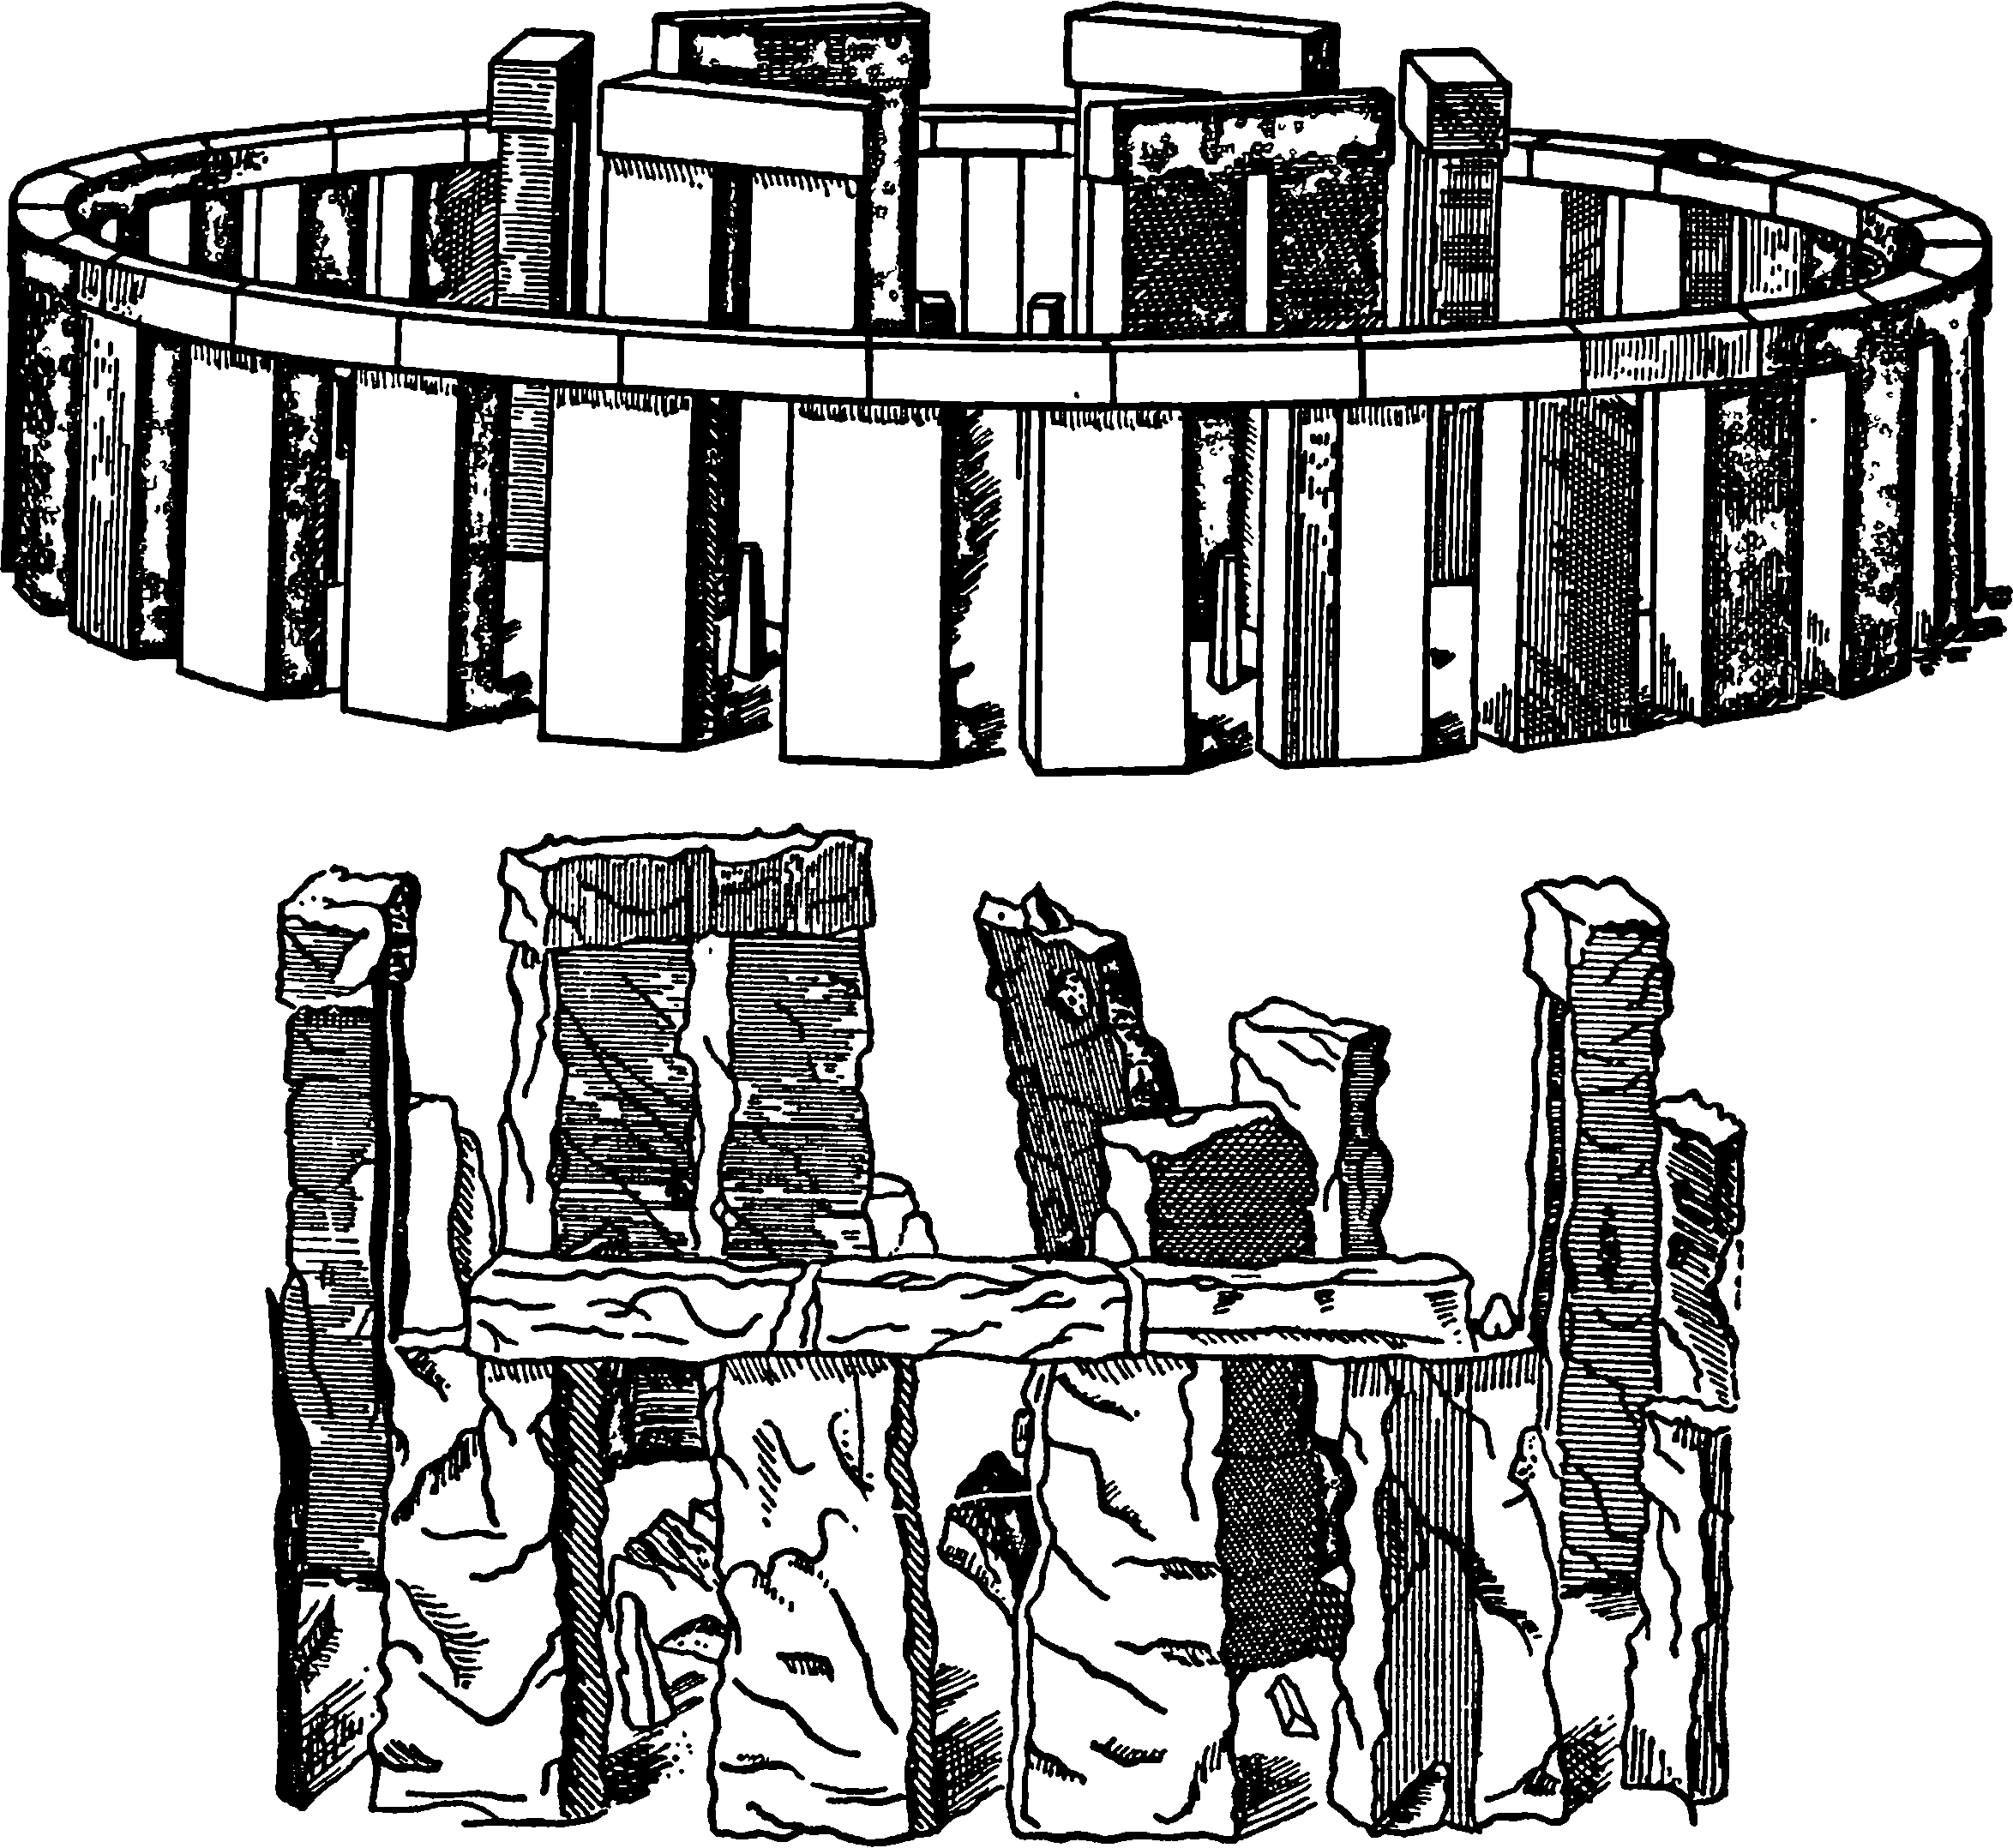  Рис. 1. Изображение Стоунхенджа в книге «Стоун-Хенг восстановленный», которое считается принадлежащим Иниго Джонсу и показывает, каким он представлял себе этот памятник